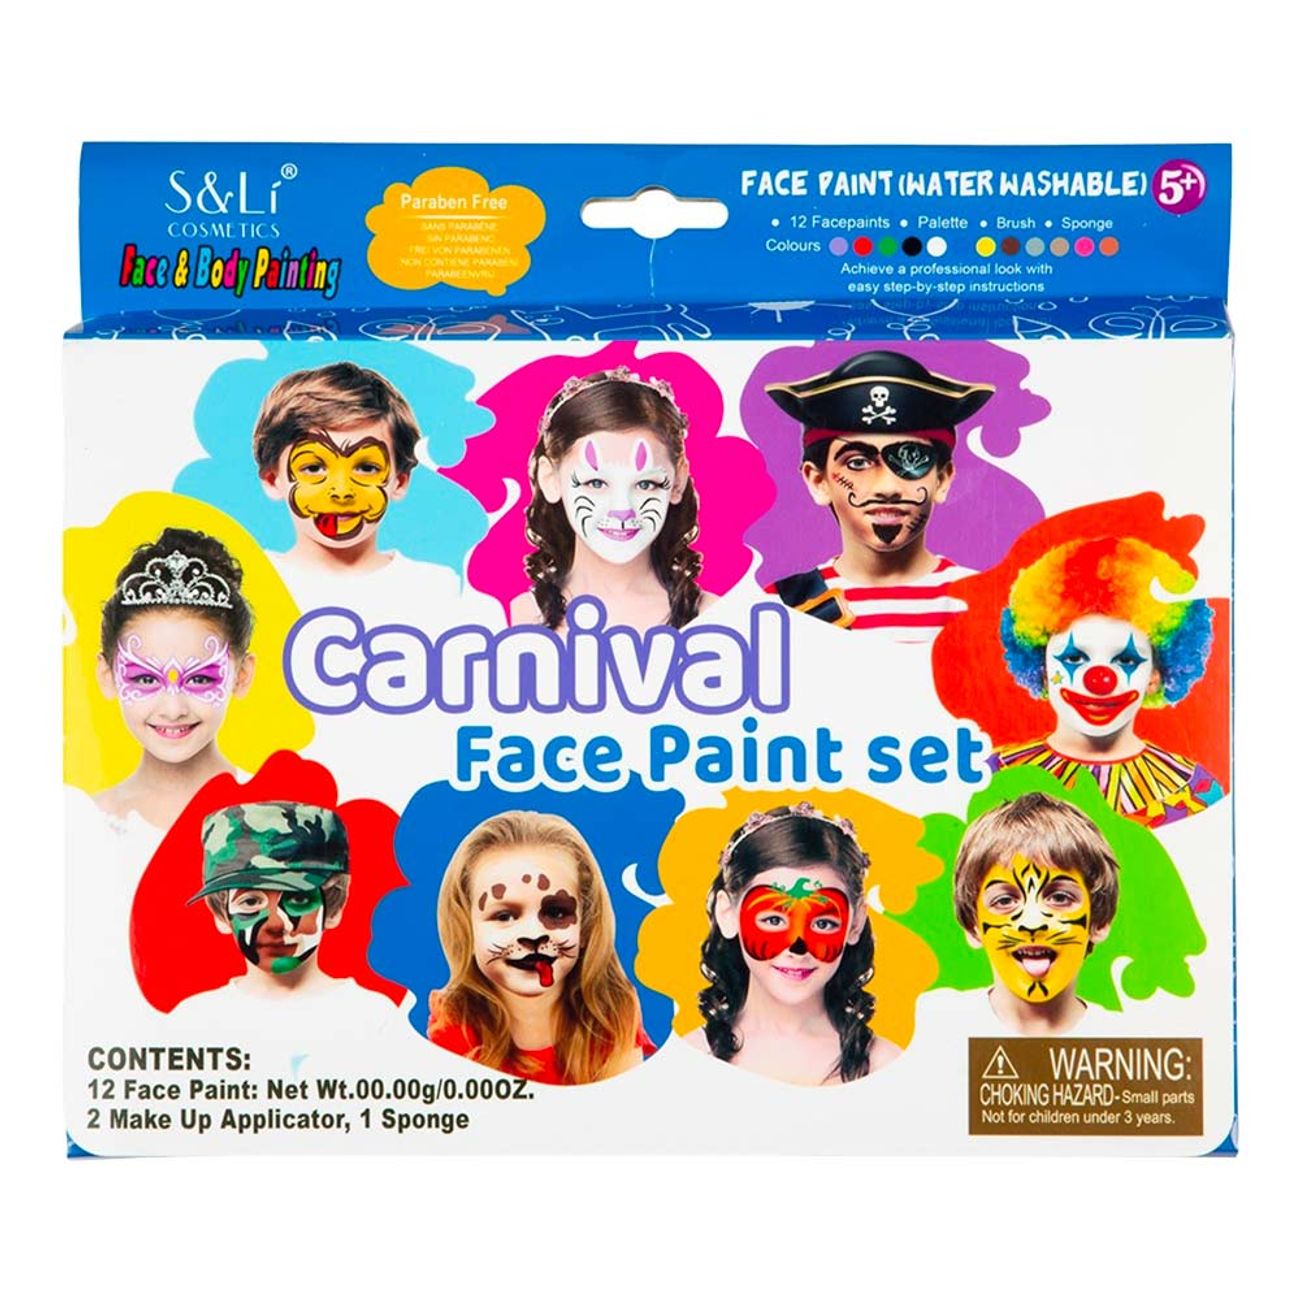 ansiktsmalning-carnival-sminkset-96999-1